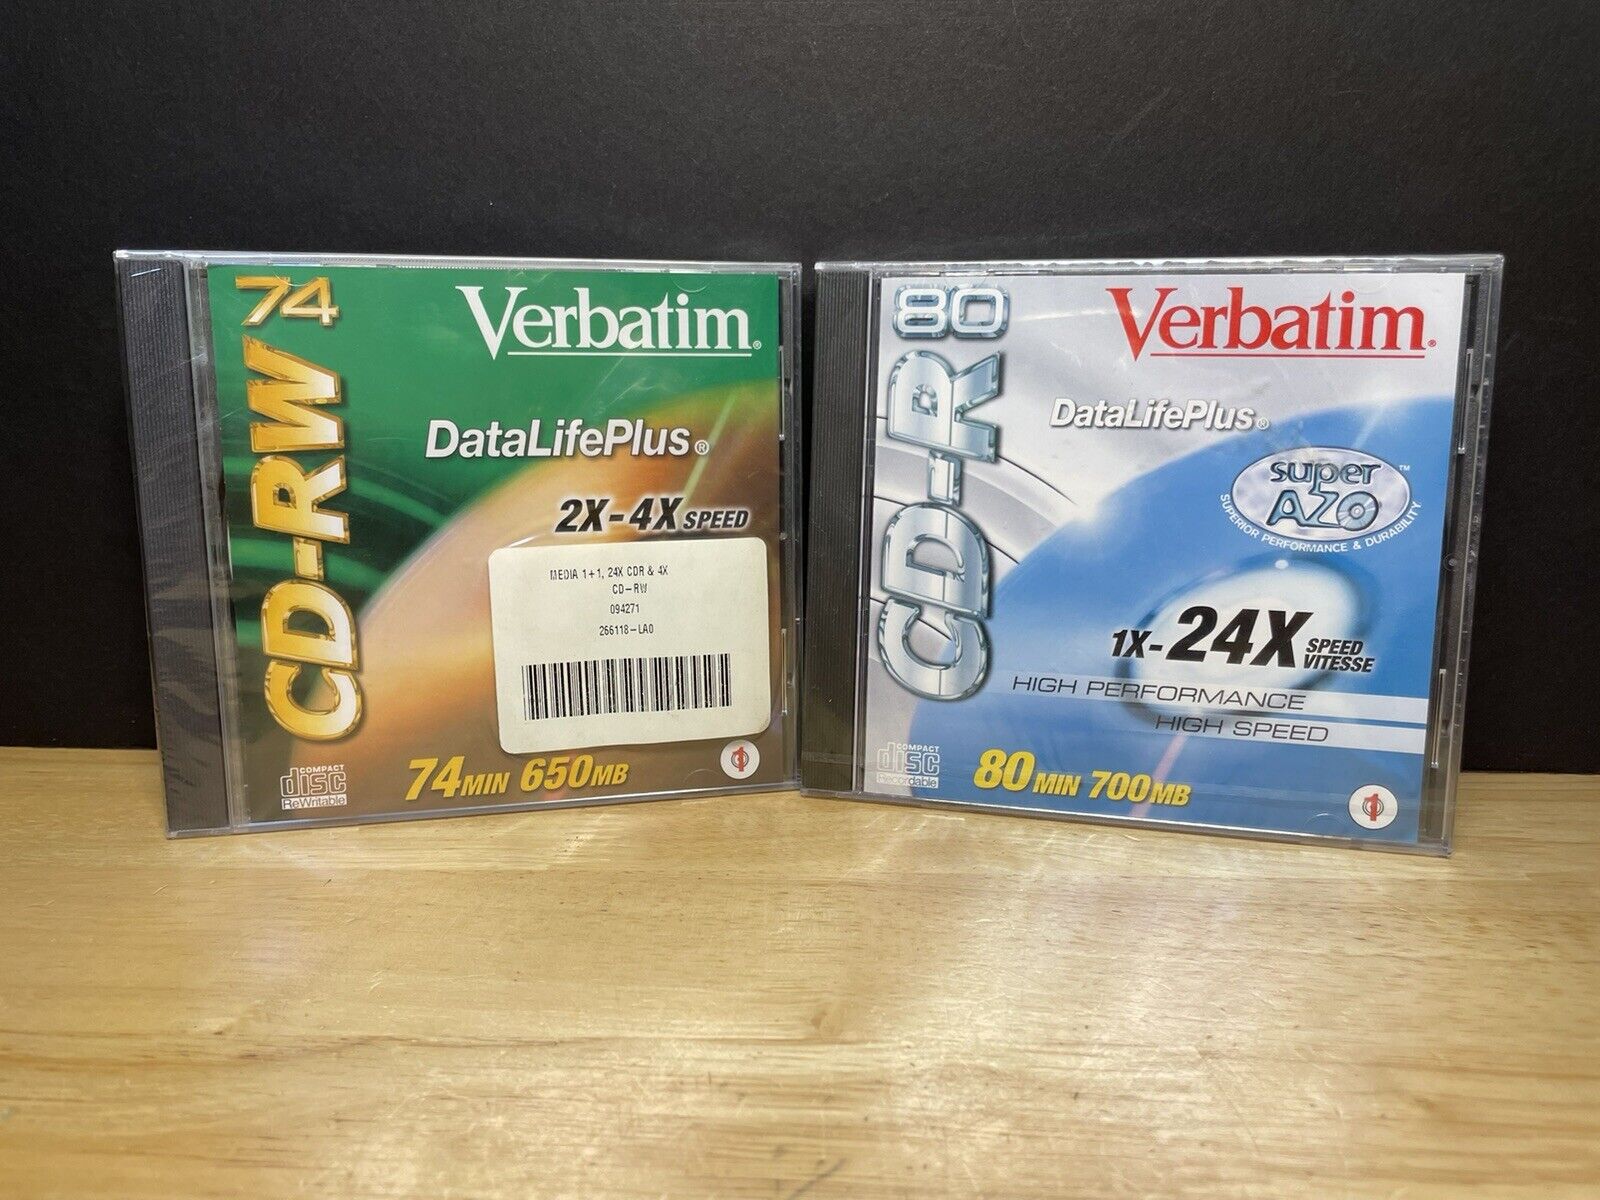 Verbatim CD-RW 74MIN 650MB & CD-R 80MIN 700MB Bundle Of 2 NEW